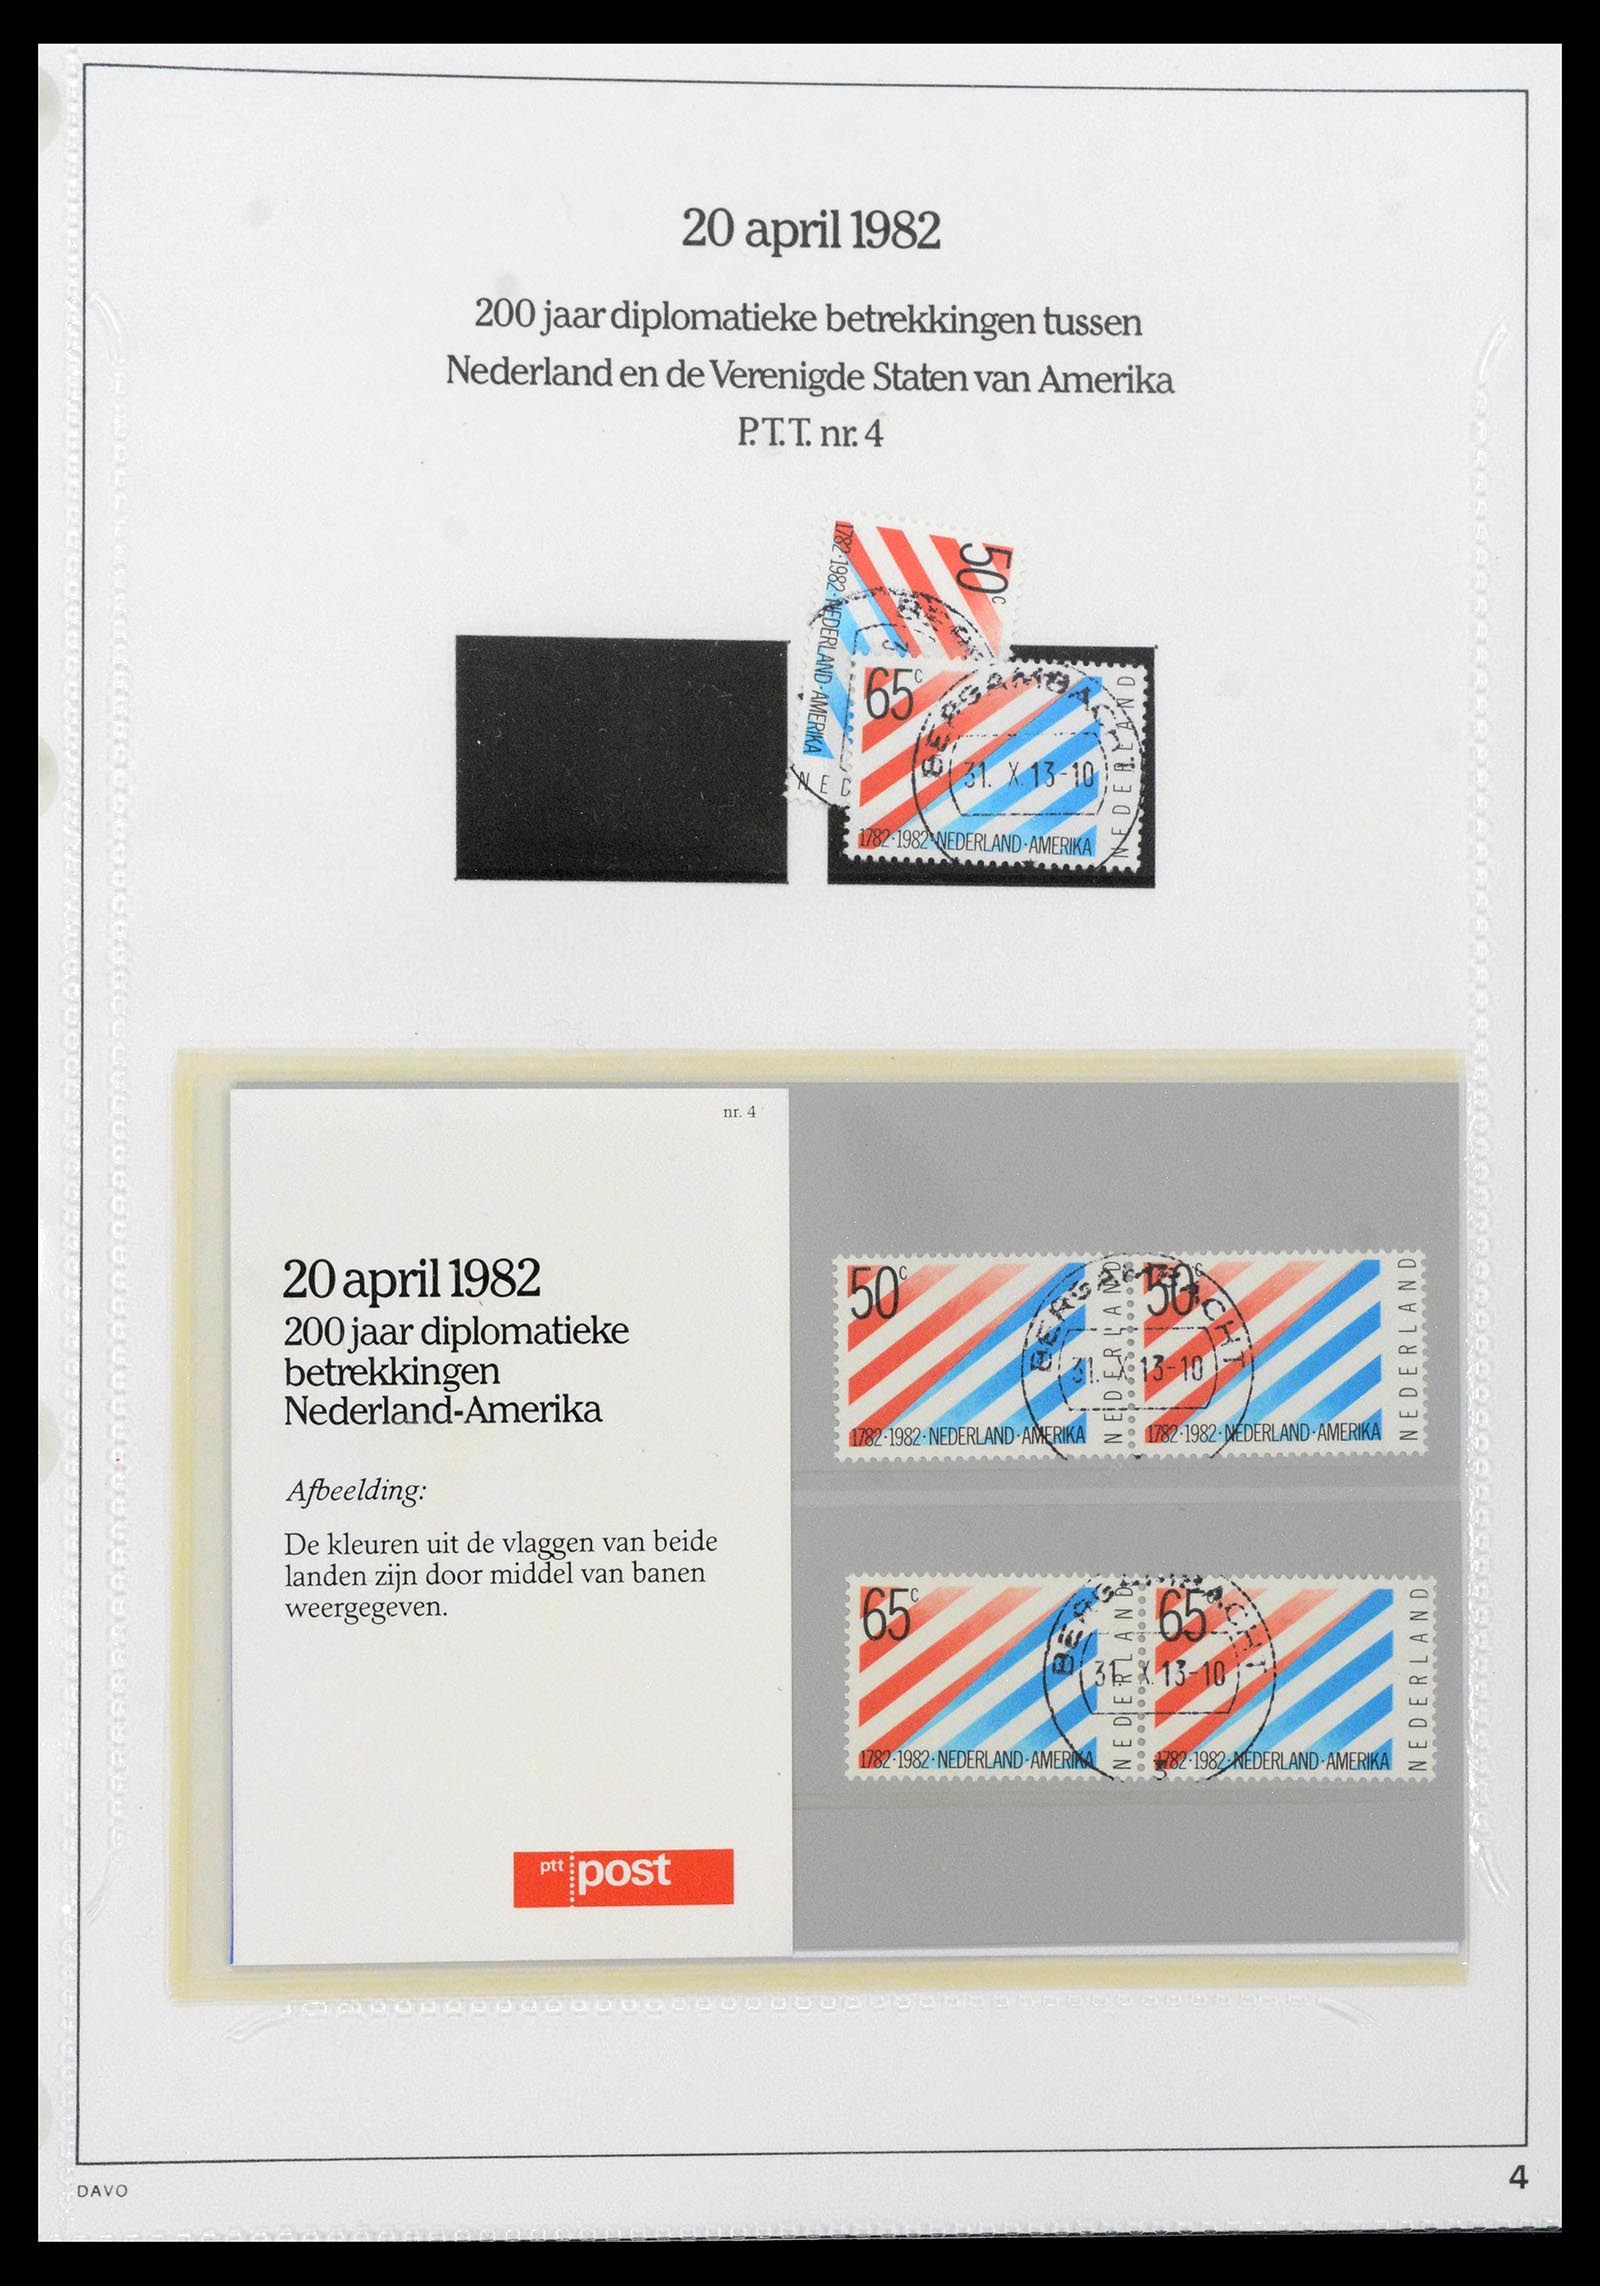 39121 0004 - Stamp collection 39121 Netherlands presentationpacks 1982-2001.